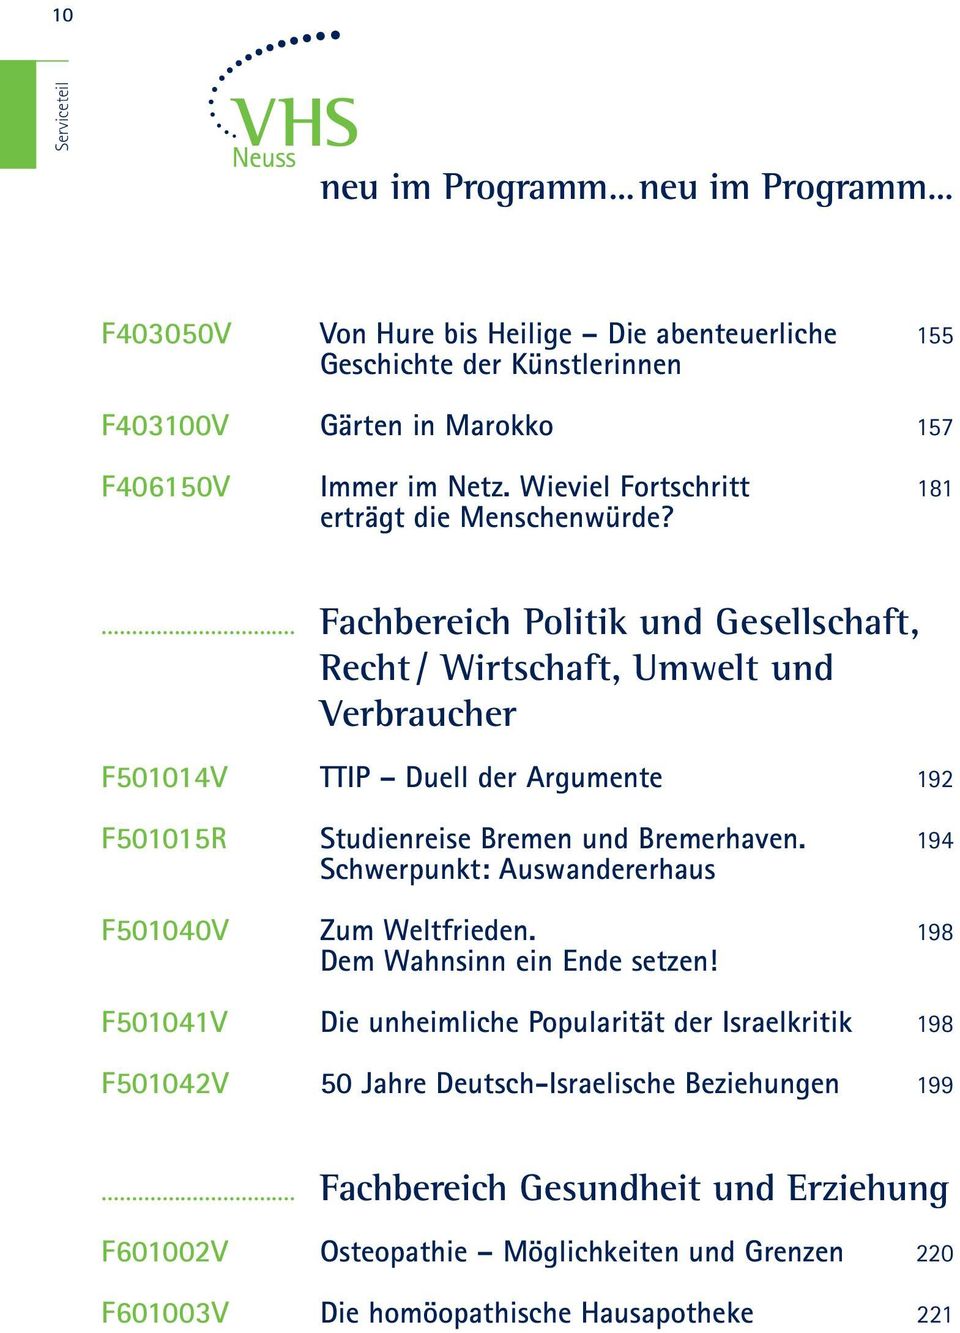 ... Fachbereich Politik und Gesellschaft, Recht / Wirtschaft, Umwelt und Verbraucher F501014V TTIP Duell der Argumente 192 F501015R Studienreise Bremen und Bremerhaven.